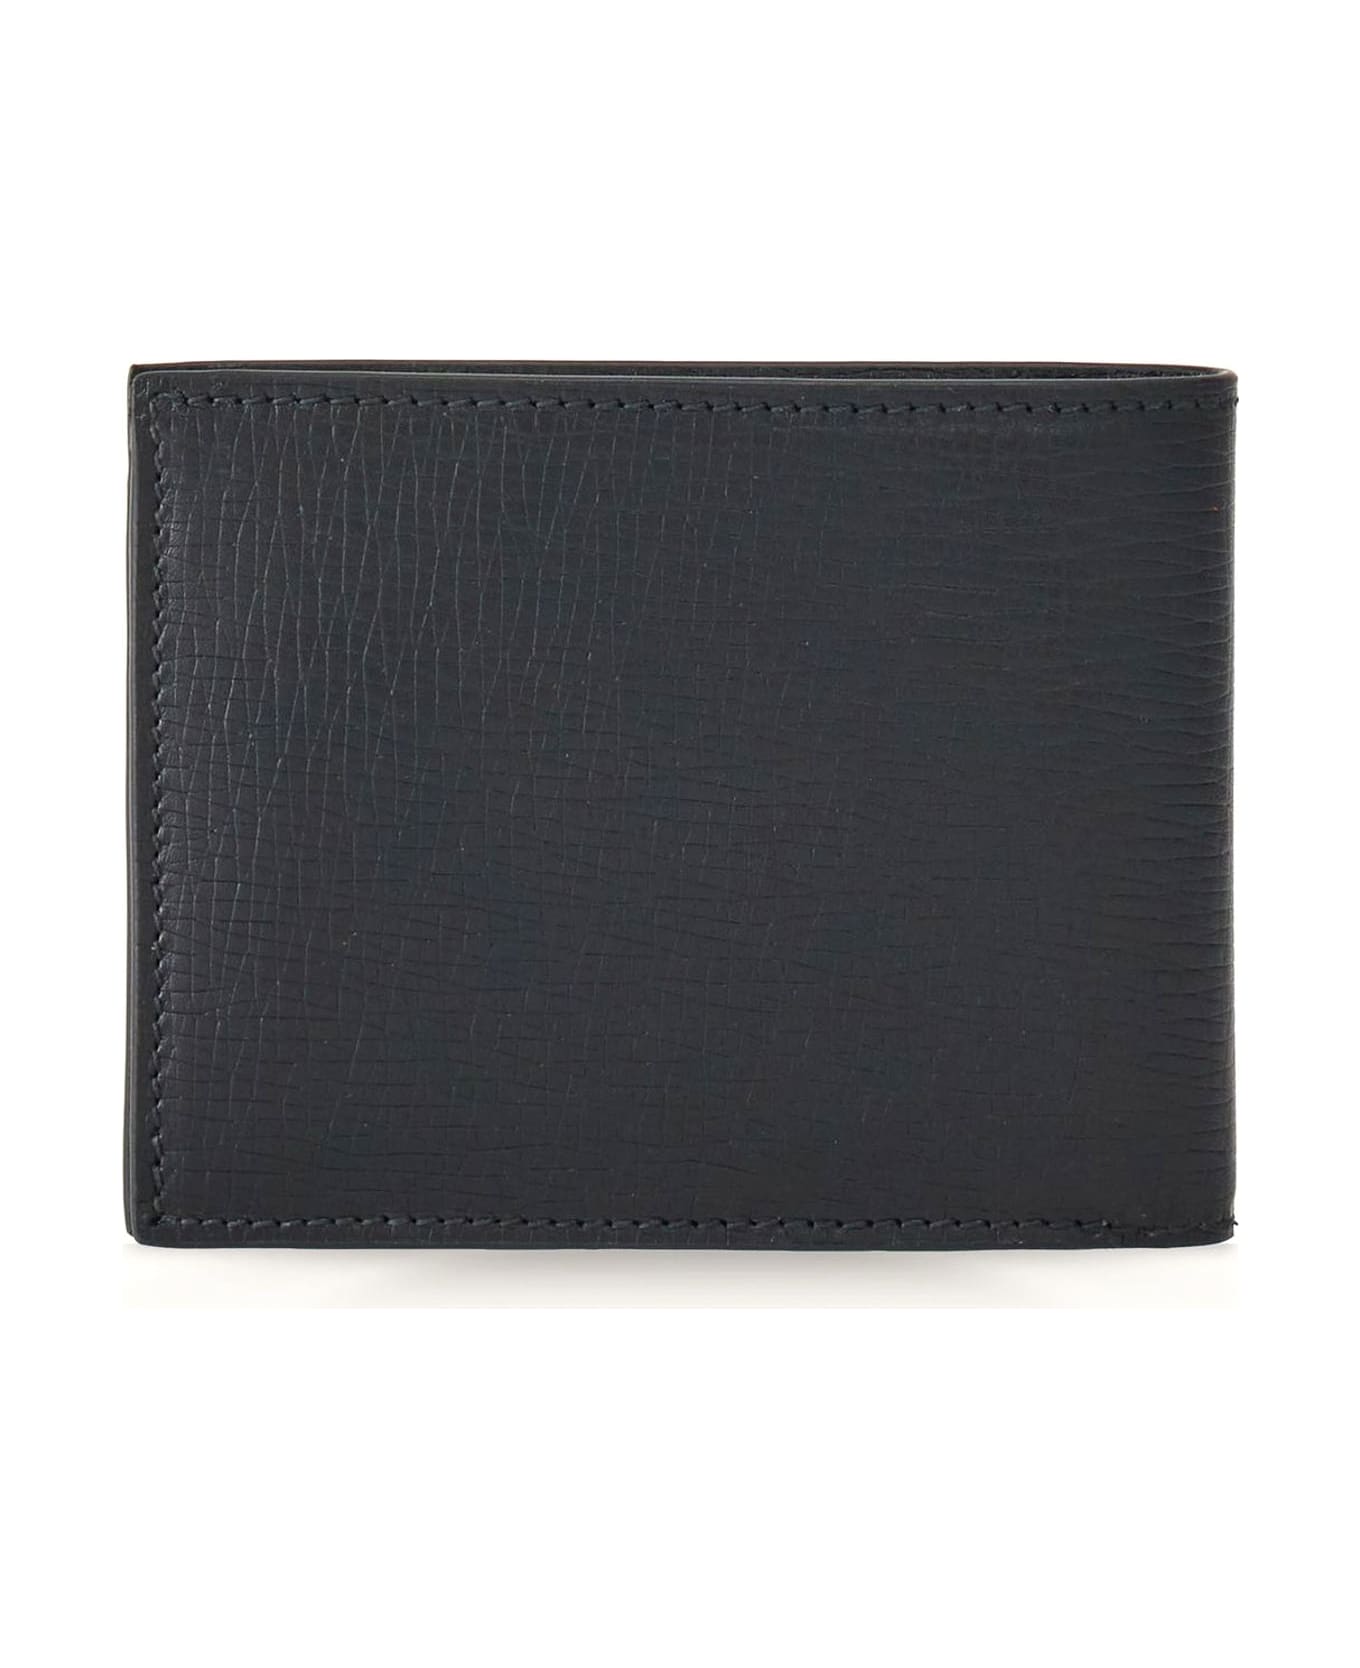 Ferragamo Grained Calfskin Leather Wallet - Black